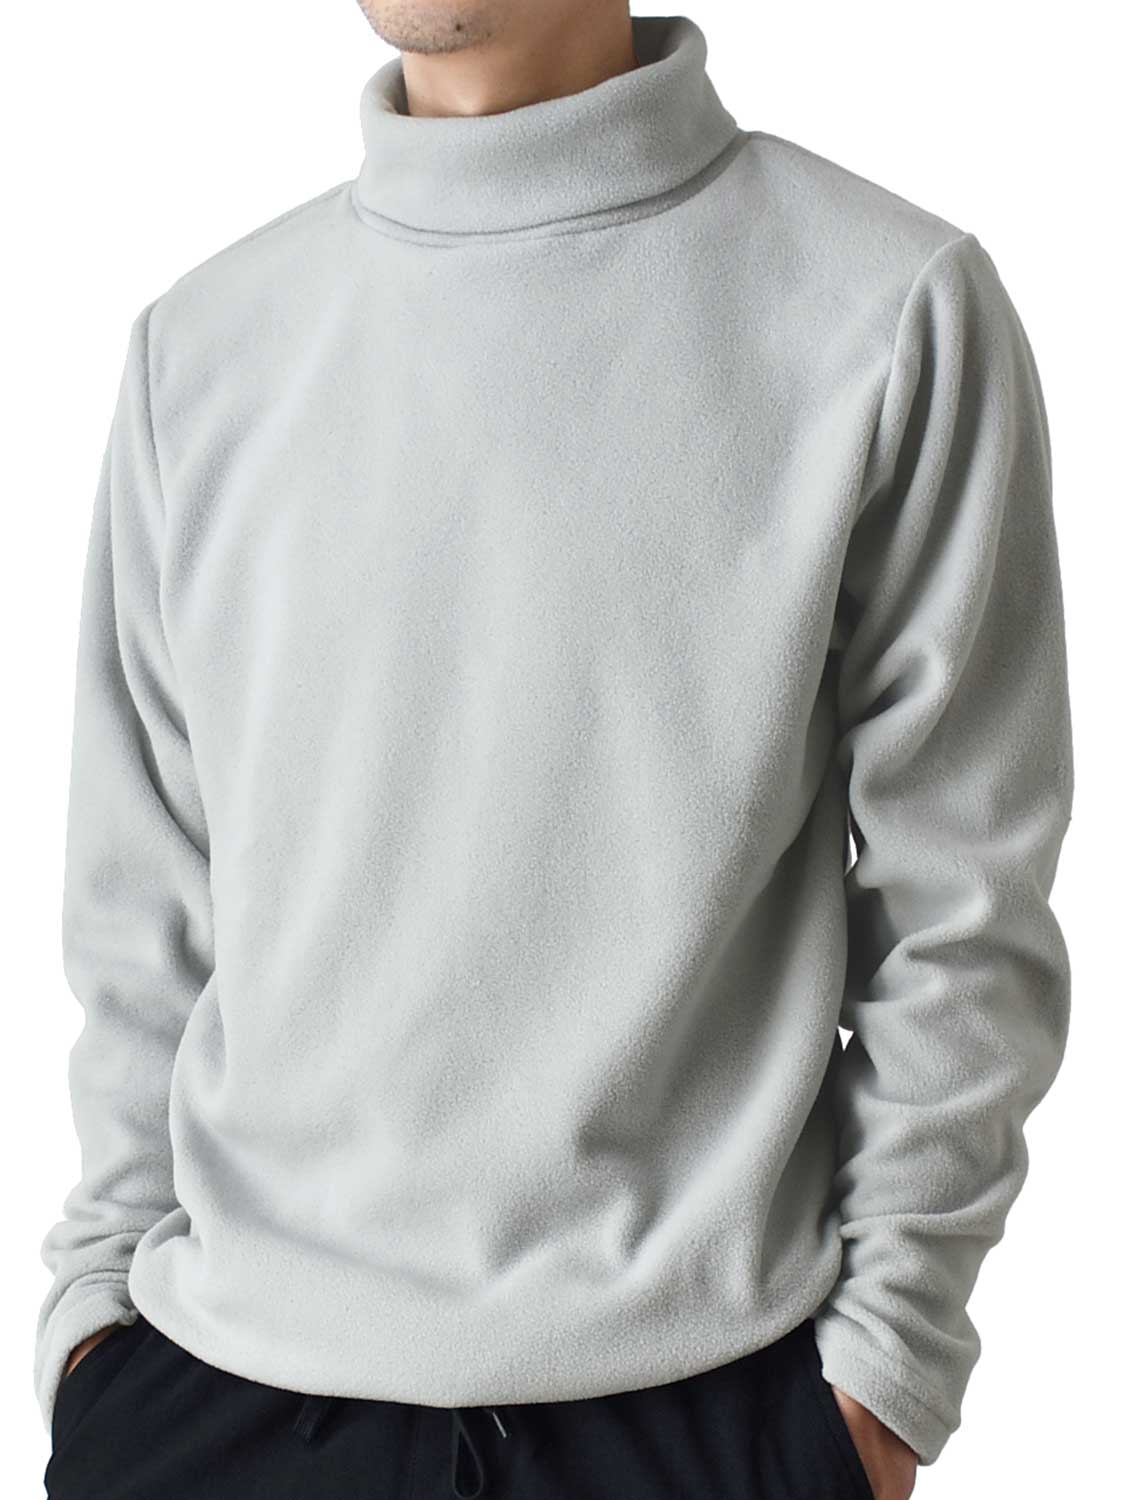 フリース カットソー タートルネック 裏起毛 暖か メンズ セーター ニット 送料無料 通販YC